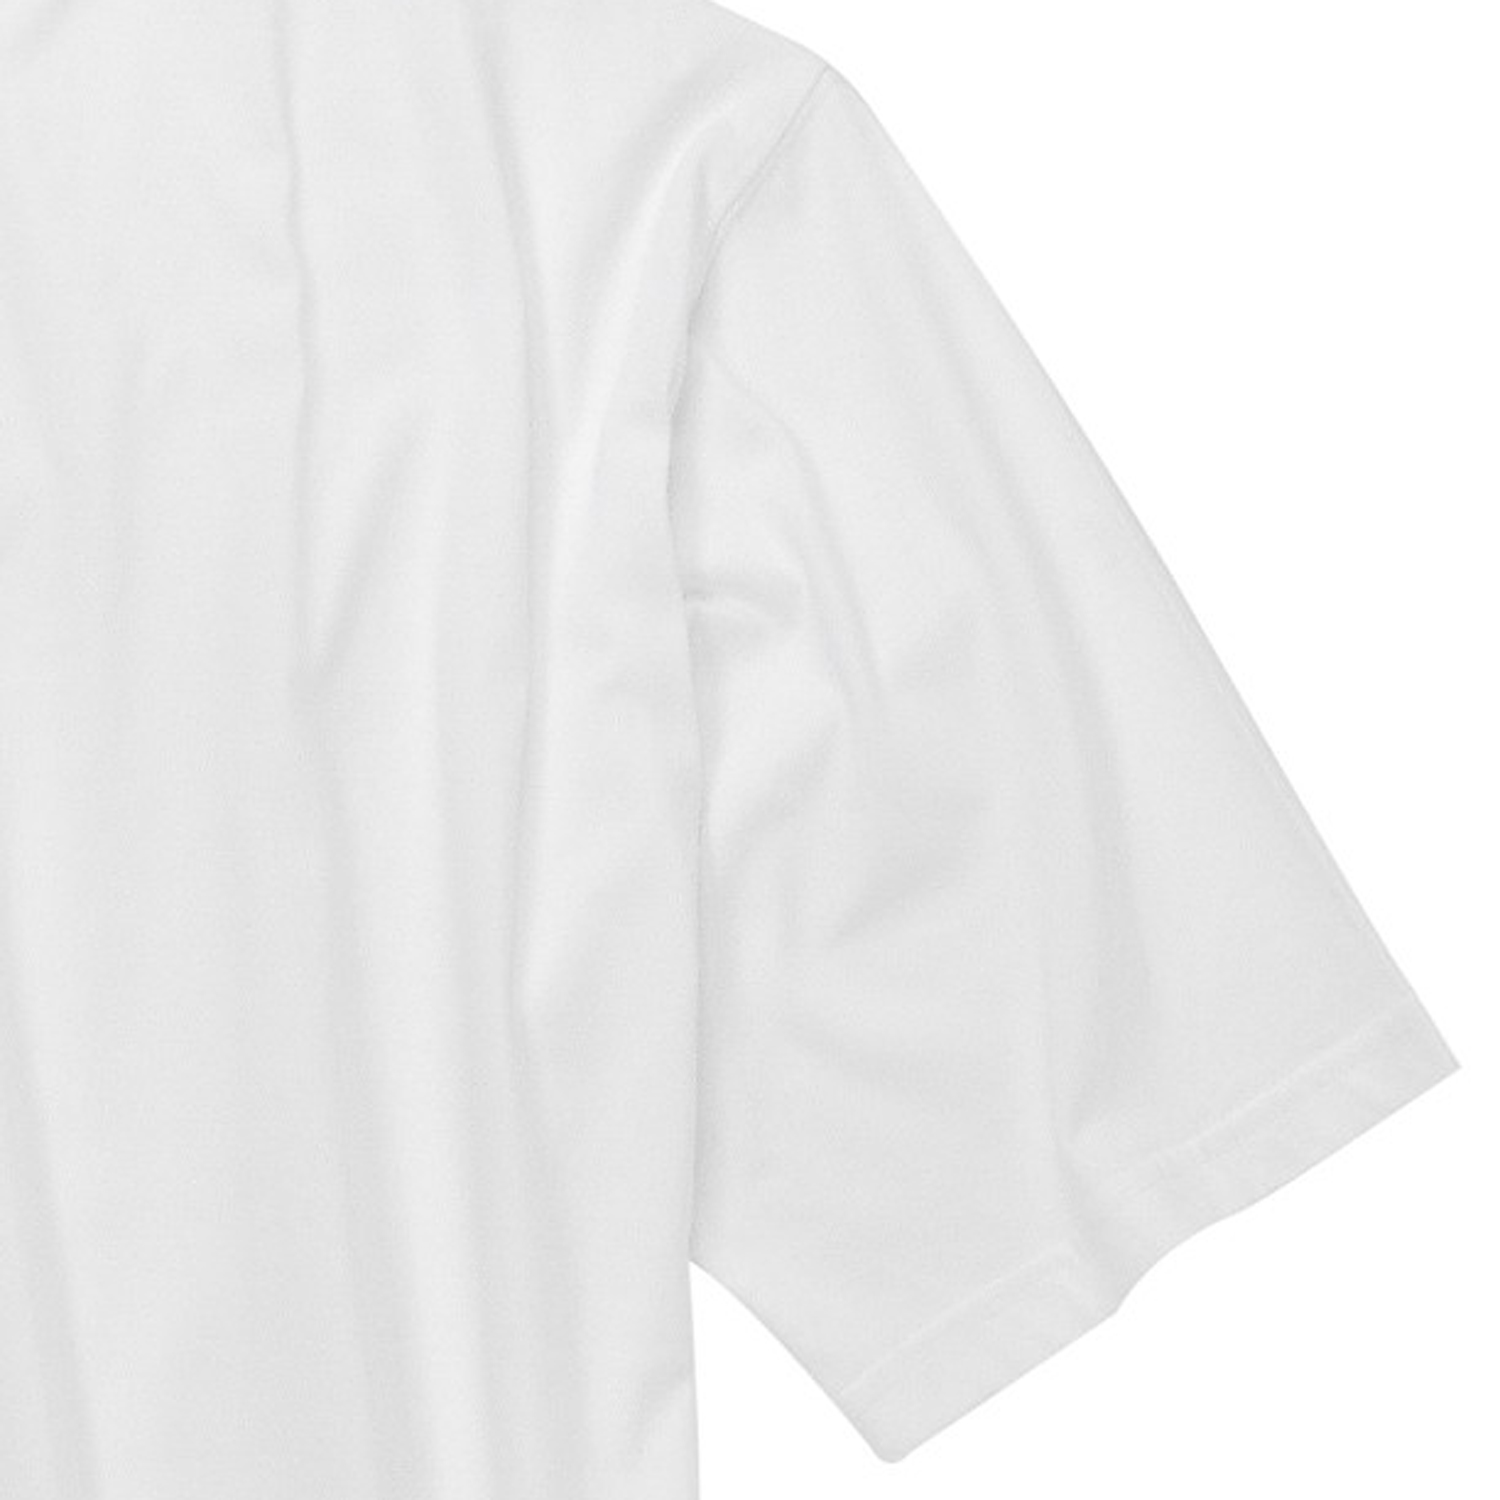 T-shirt blanc 100% coton de Kapart grandes tailles jusqu'au 8XL